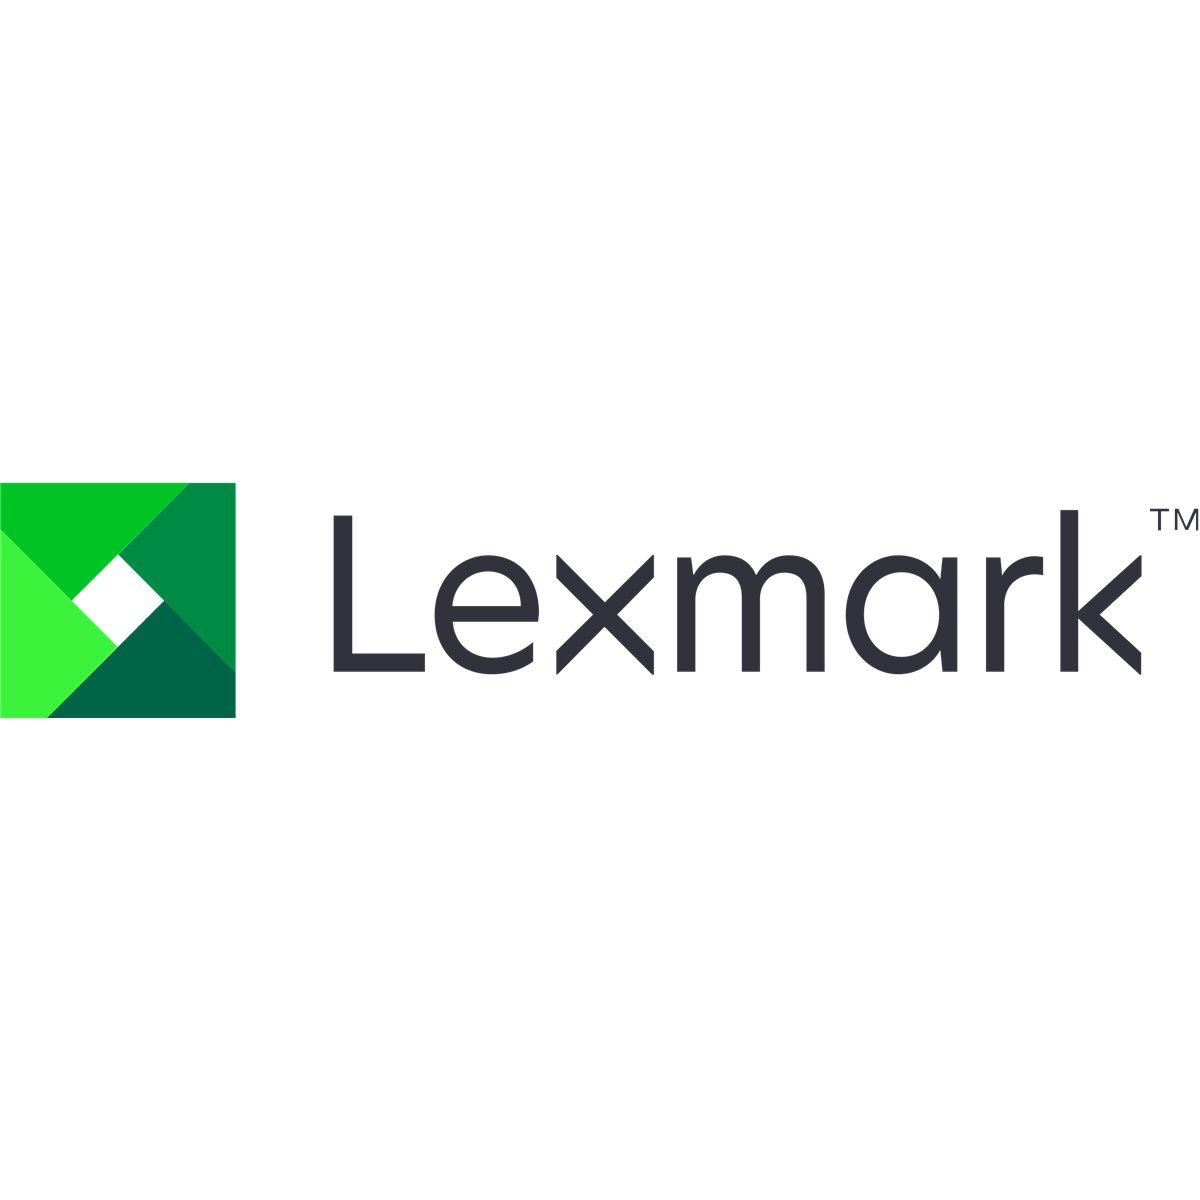 Lexmark MX91x SVC Motor Tray lift up